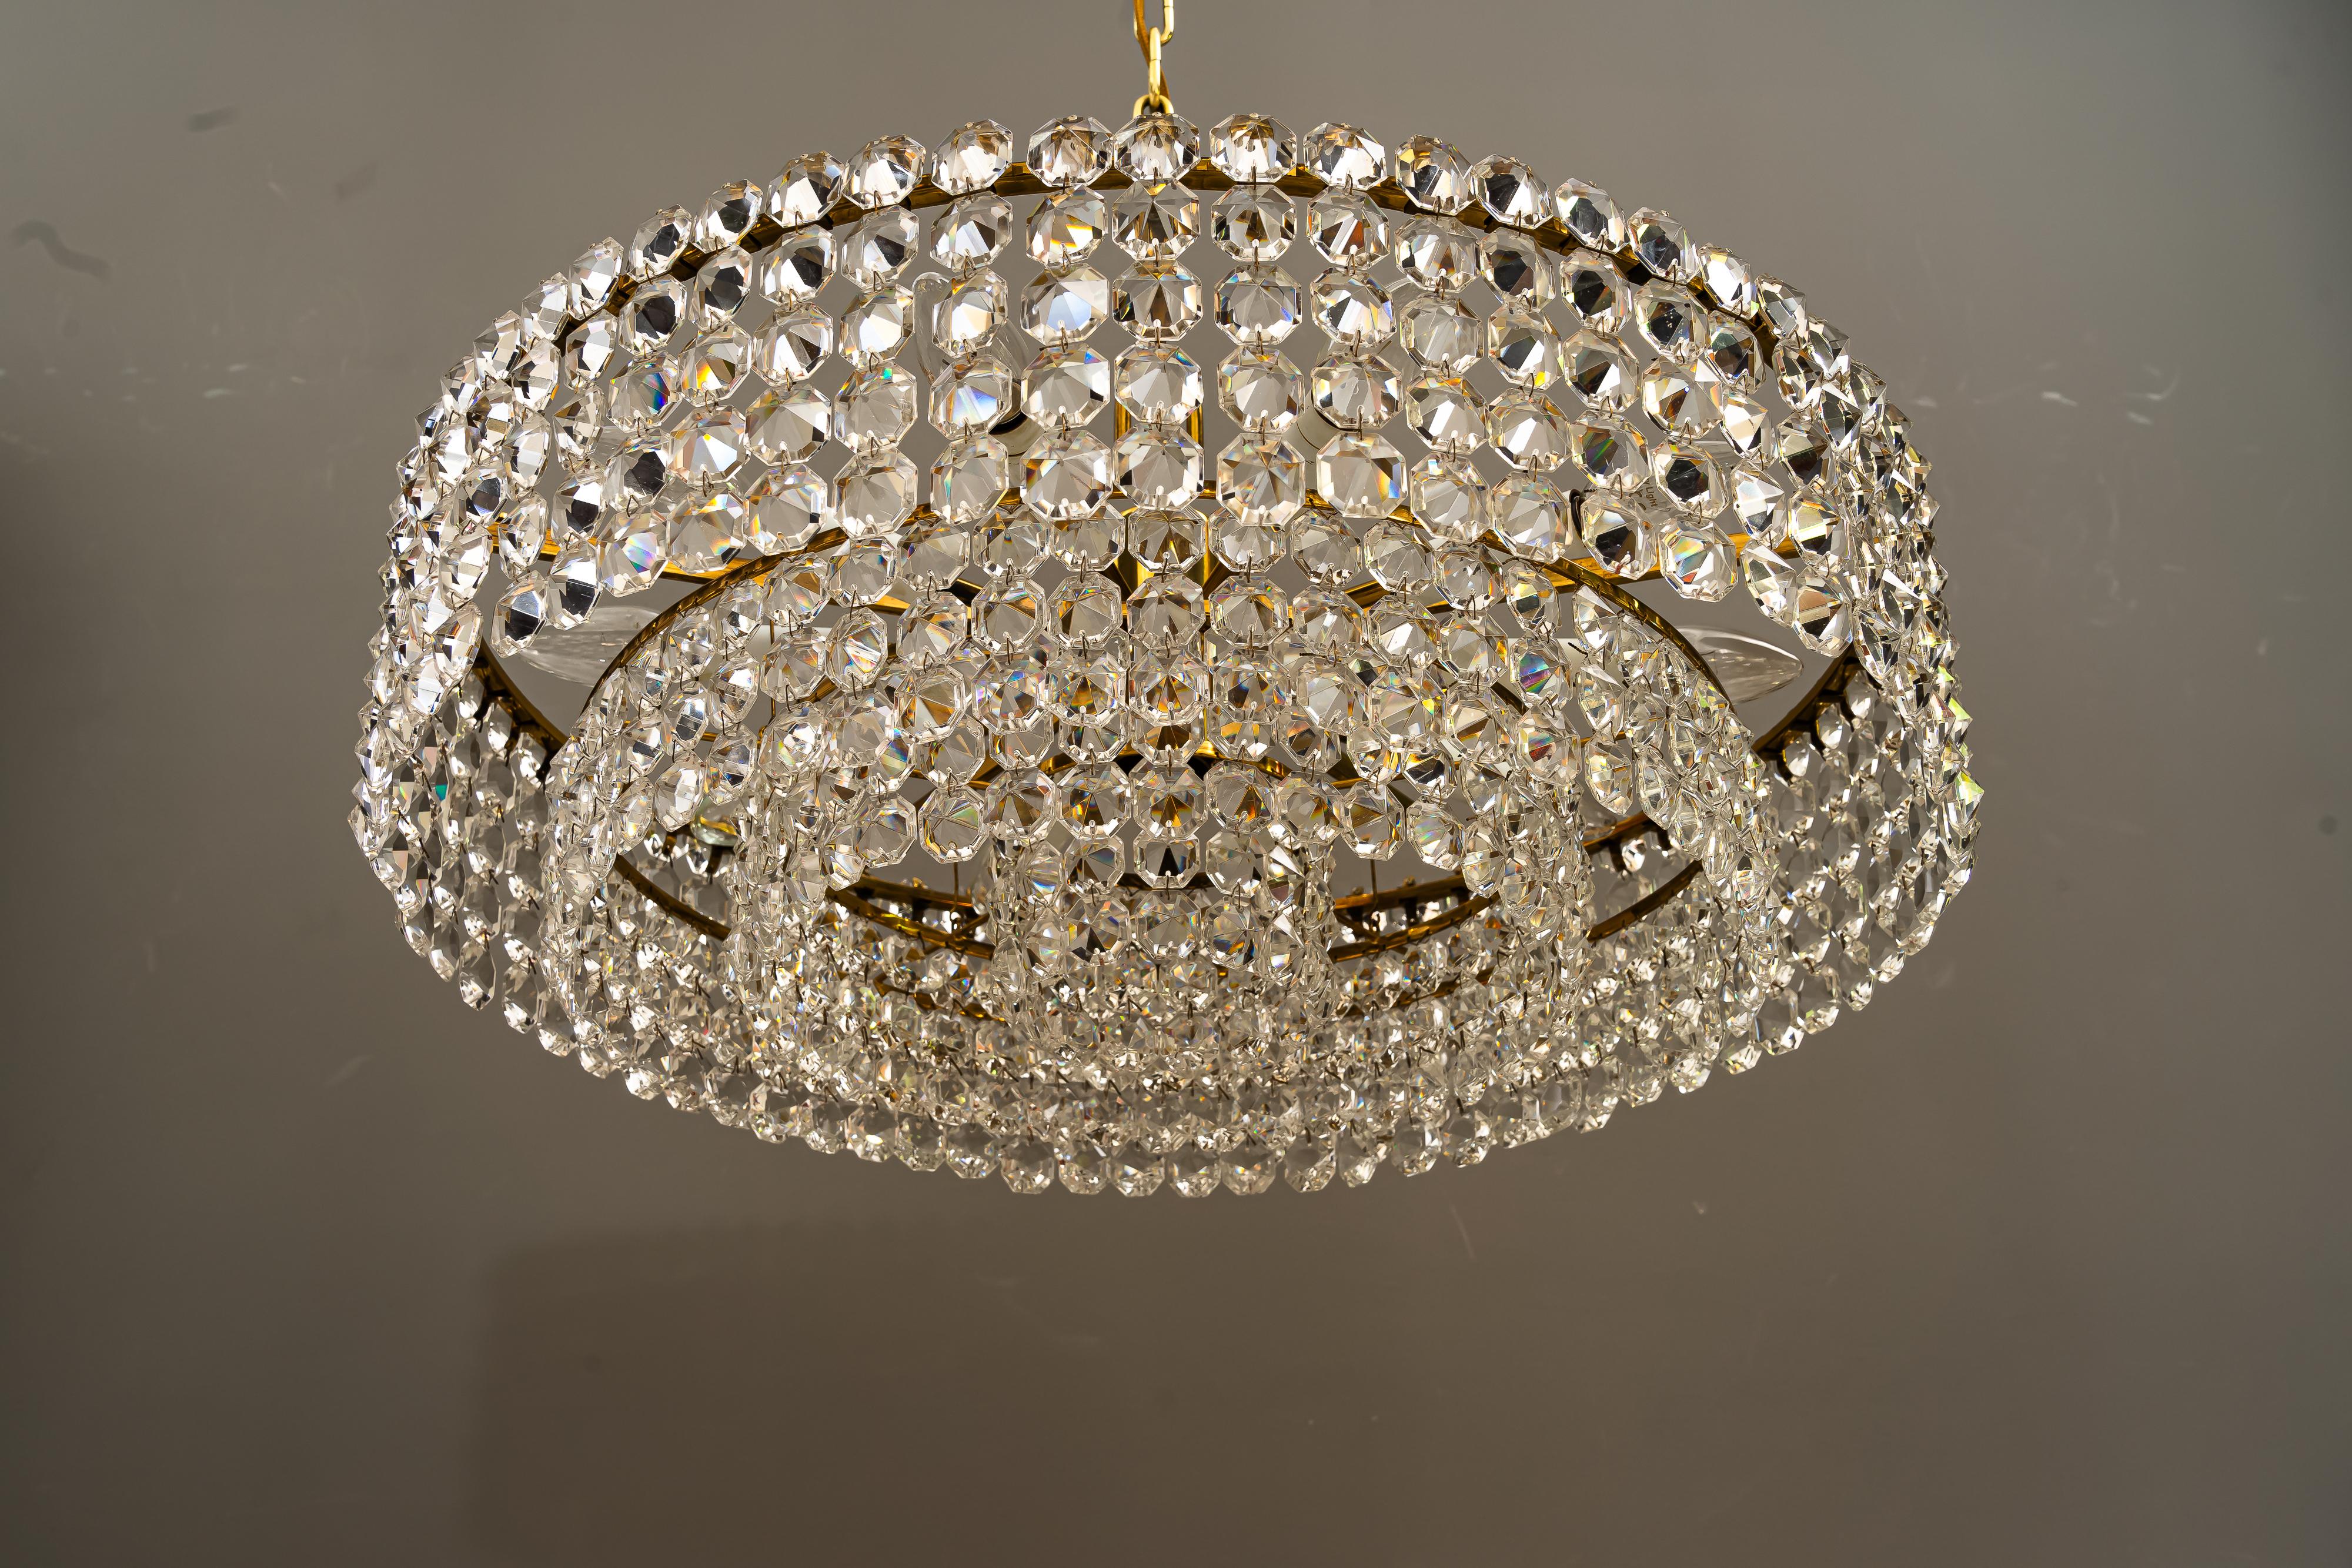 Brass J.L. Lobmeyr crystal chandelier vienna around 1950s ( signed ) For Sale